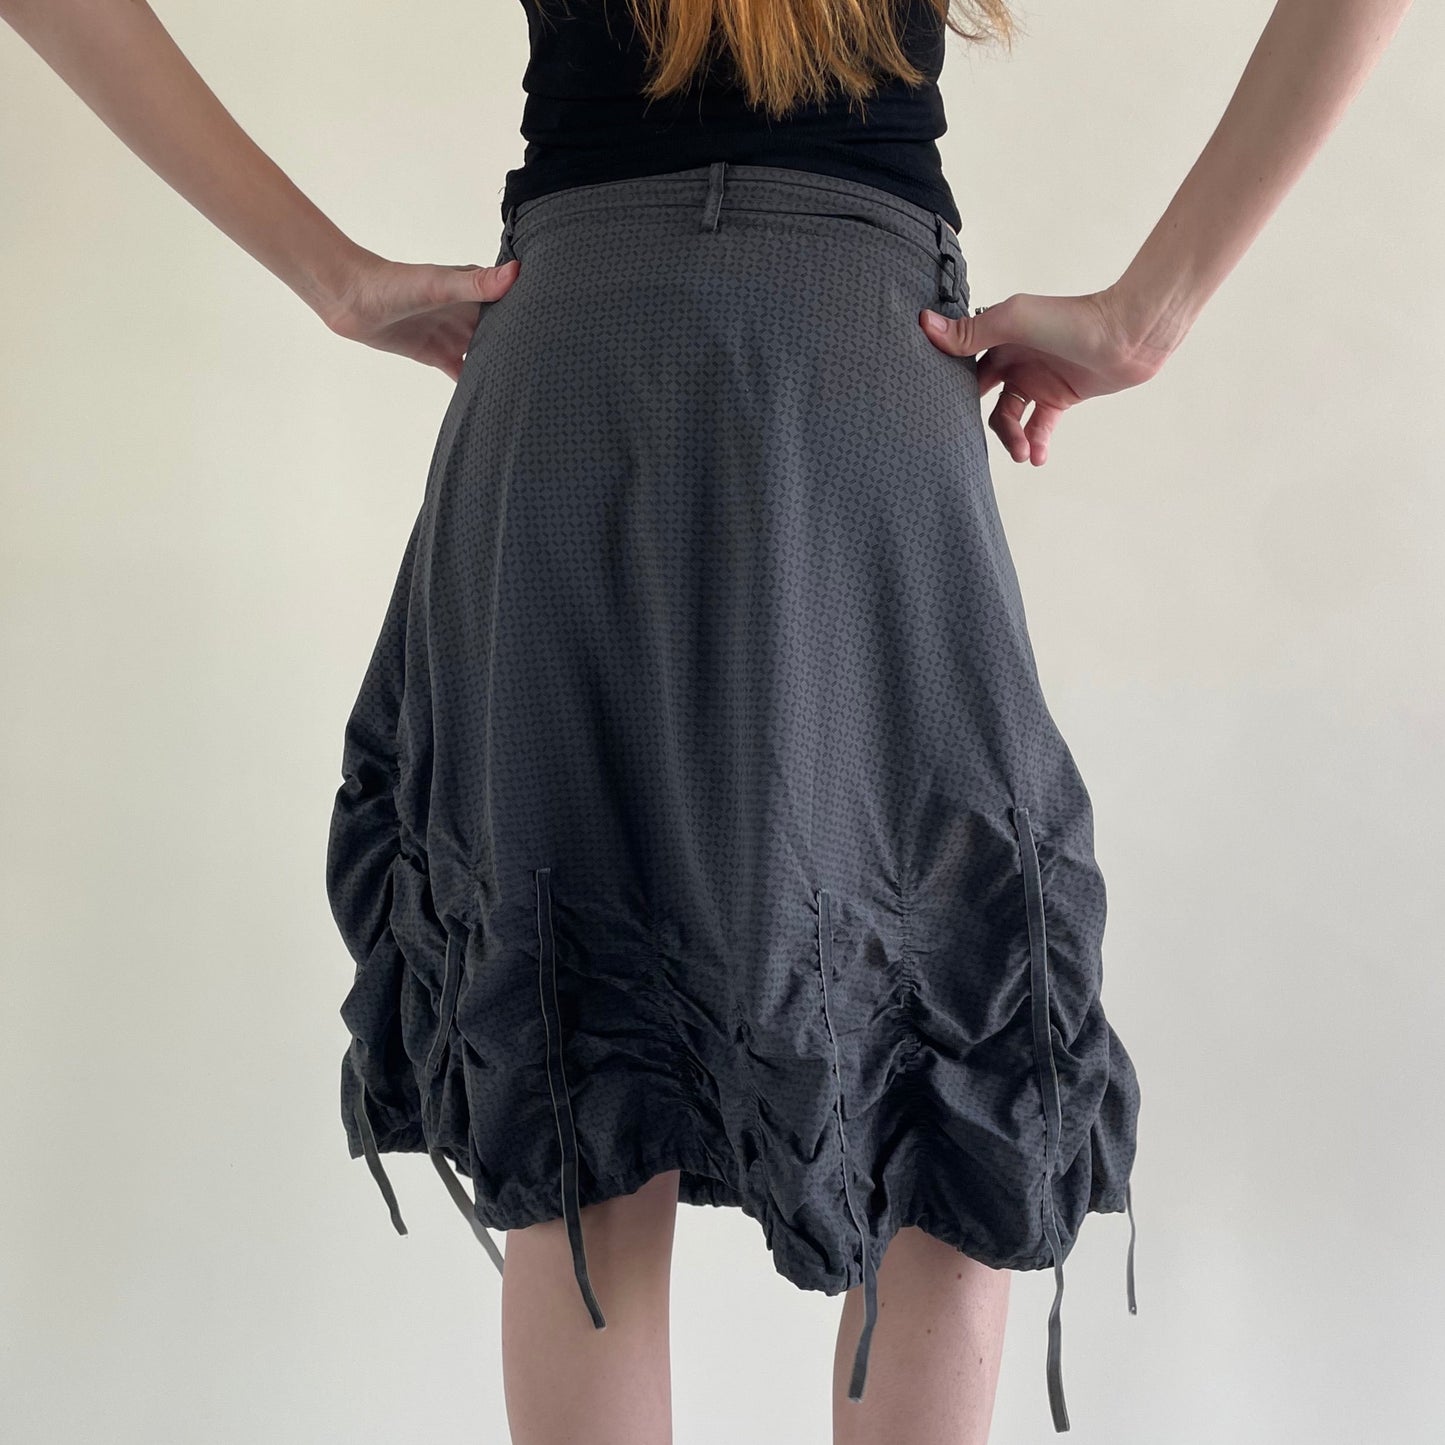 tech skirt